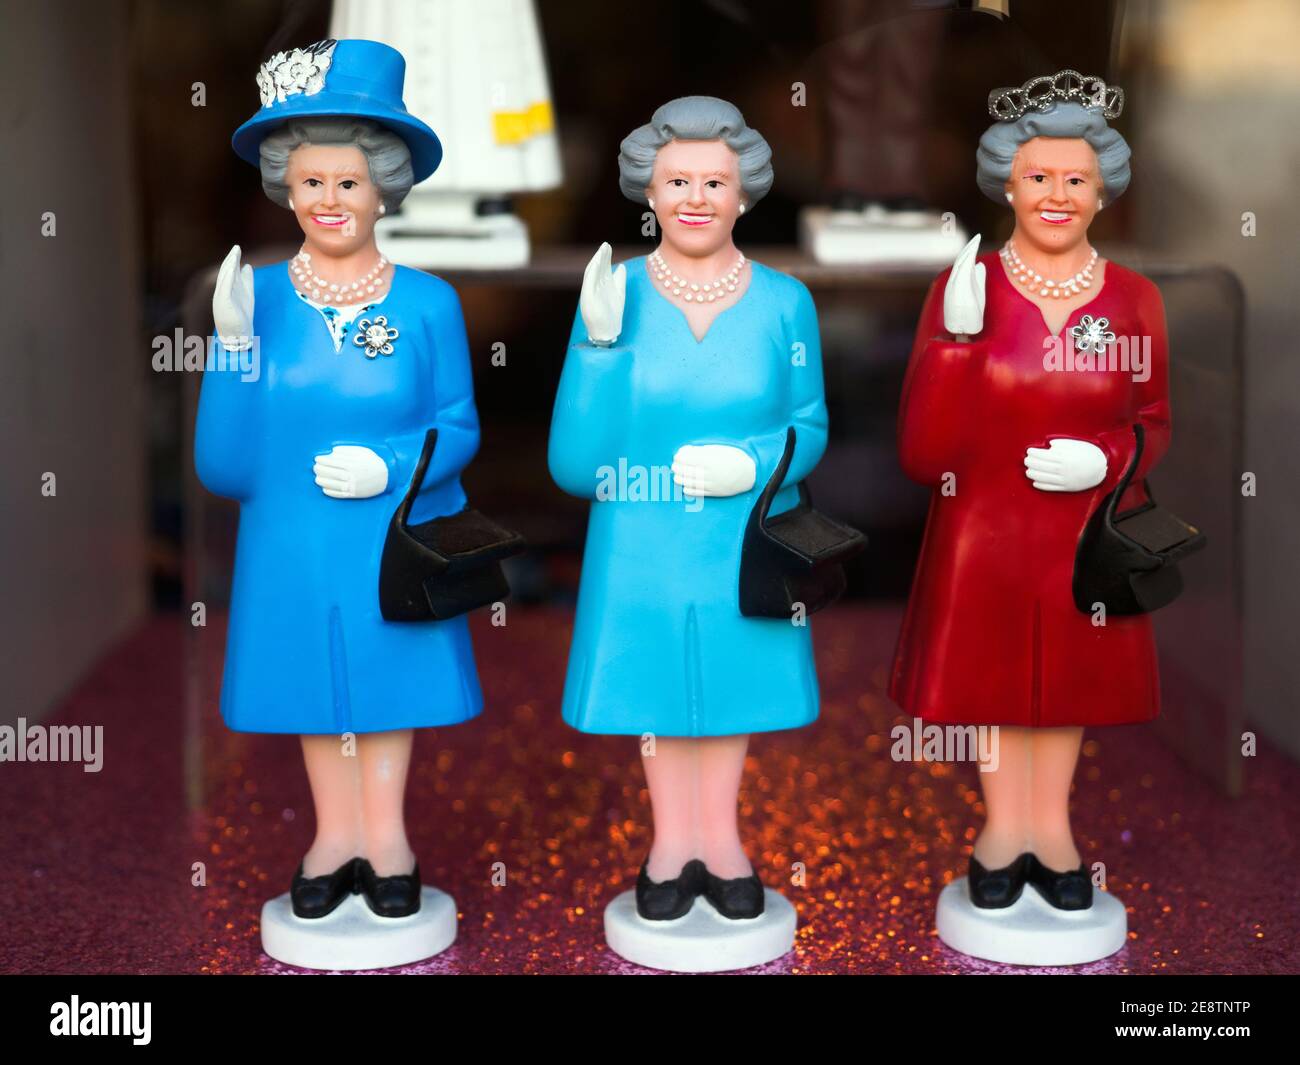 Souvenir de la figurine Reine Elisabeth II - Londres, Angleterre Banque D'Images